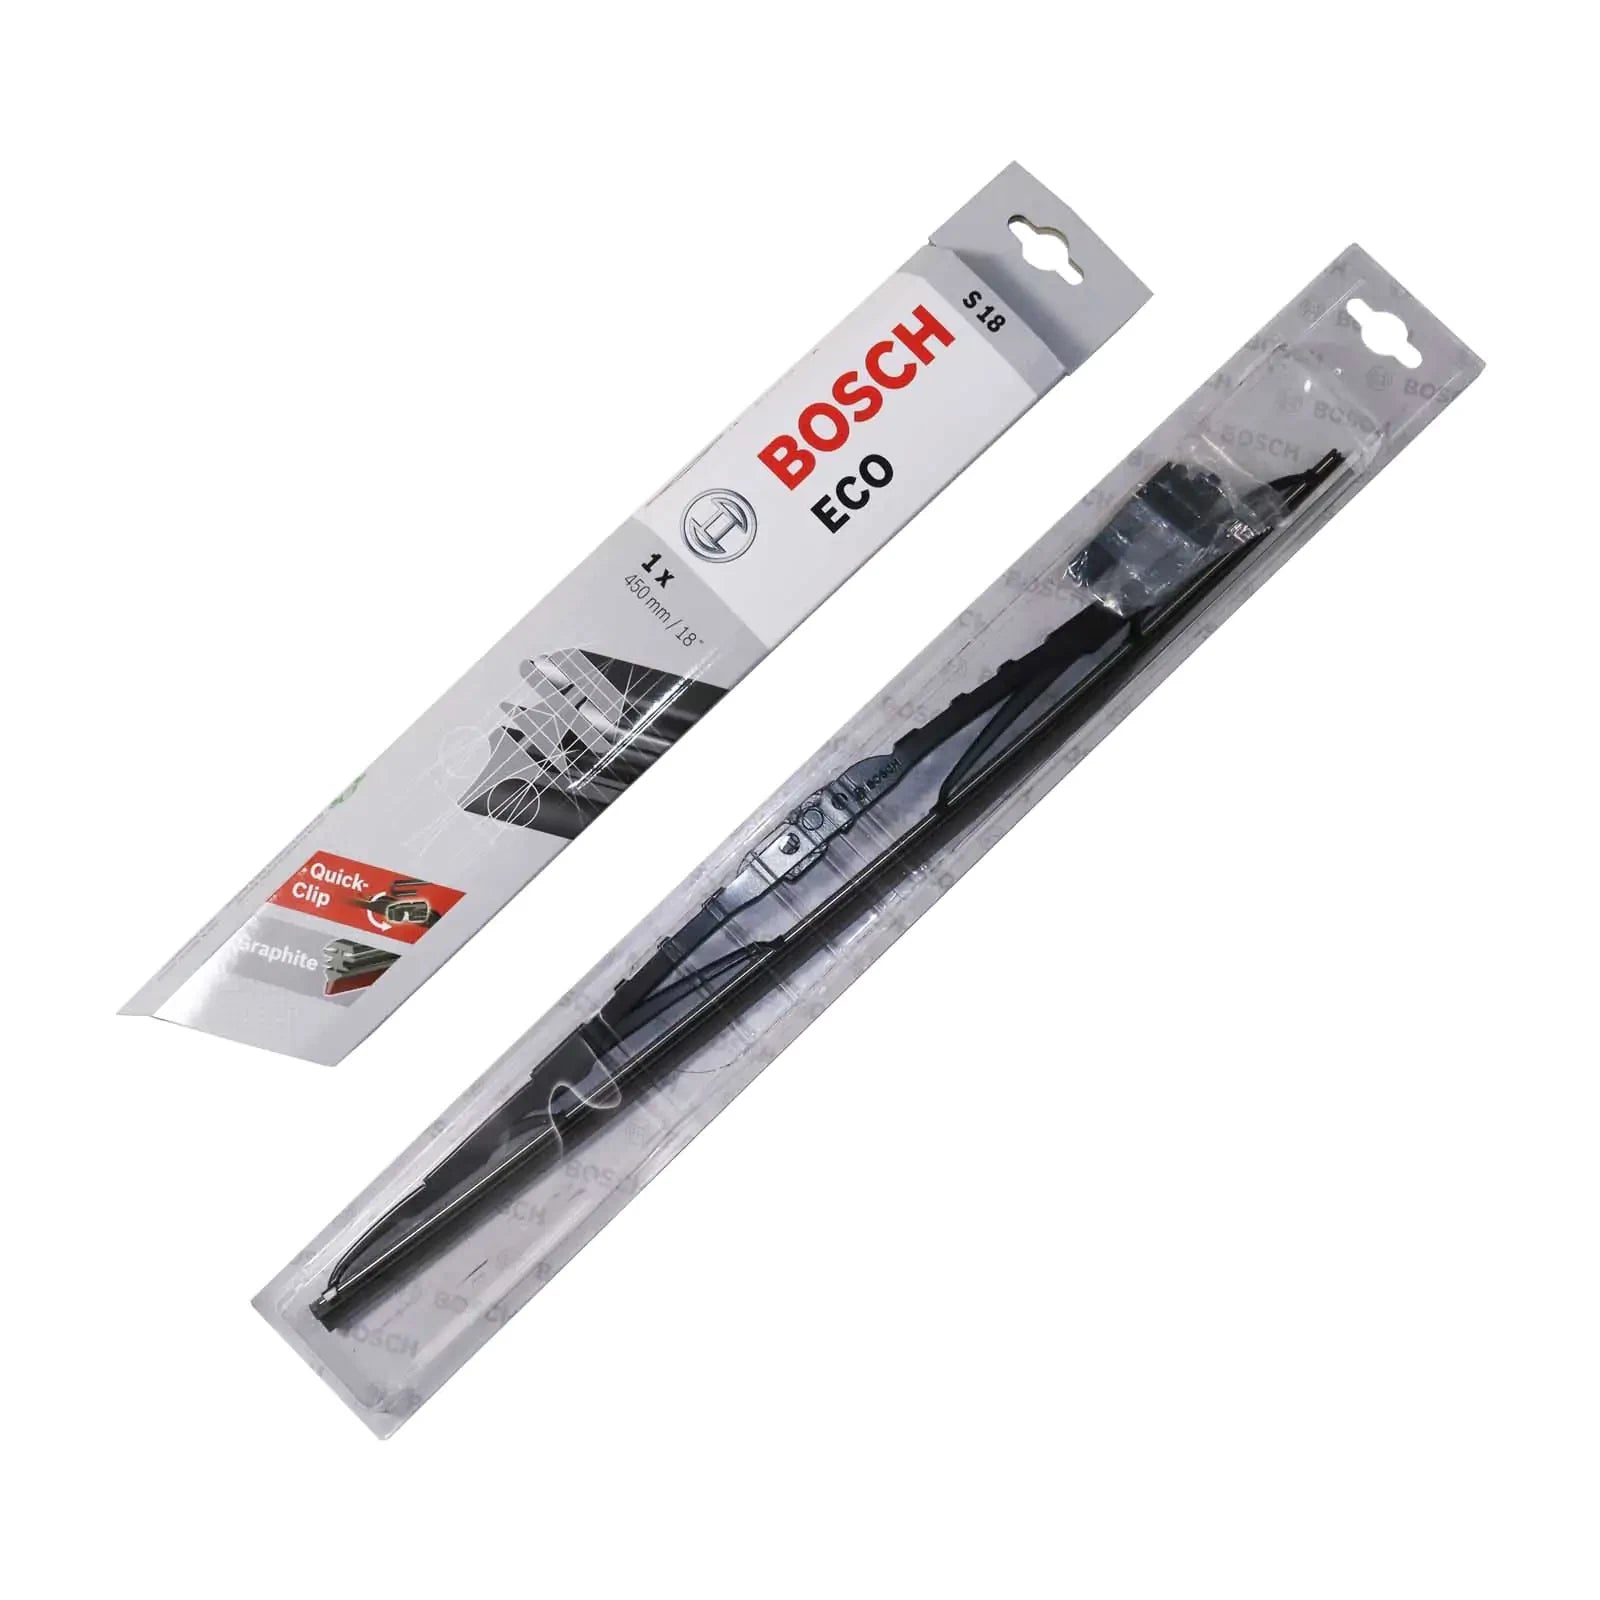 Bosch Wiper Blades - Eco  (set)